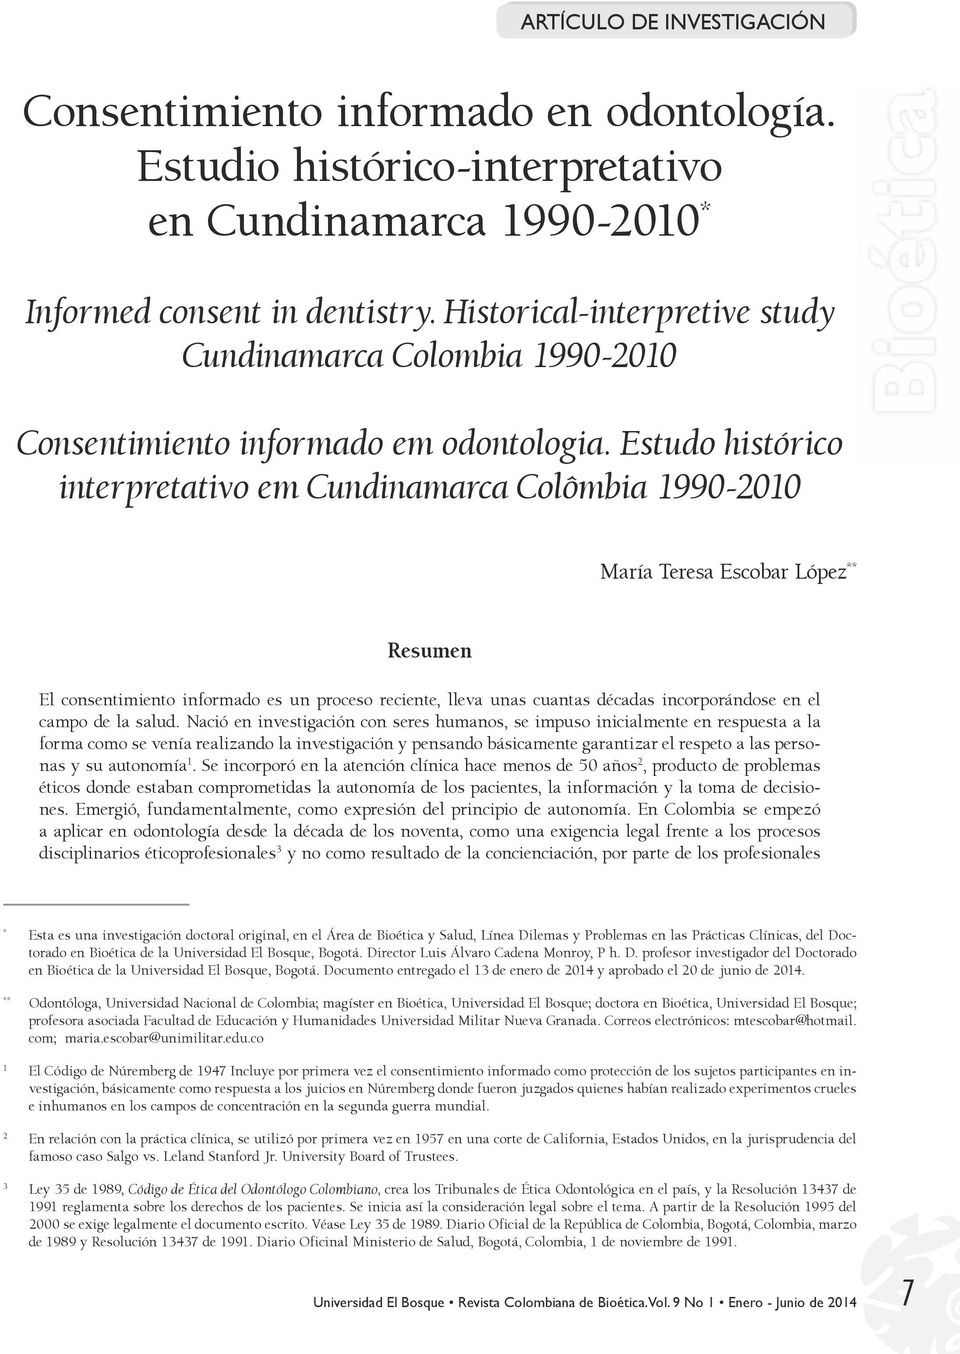 Estudo histórico interpretativo em Cundinamarca Colômbia 1990-2010 María Teresa Escobar López ** Resumen El consentimiento informado es un proceso reciente, lleva unas cuantas décadas incorporándose